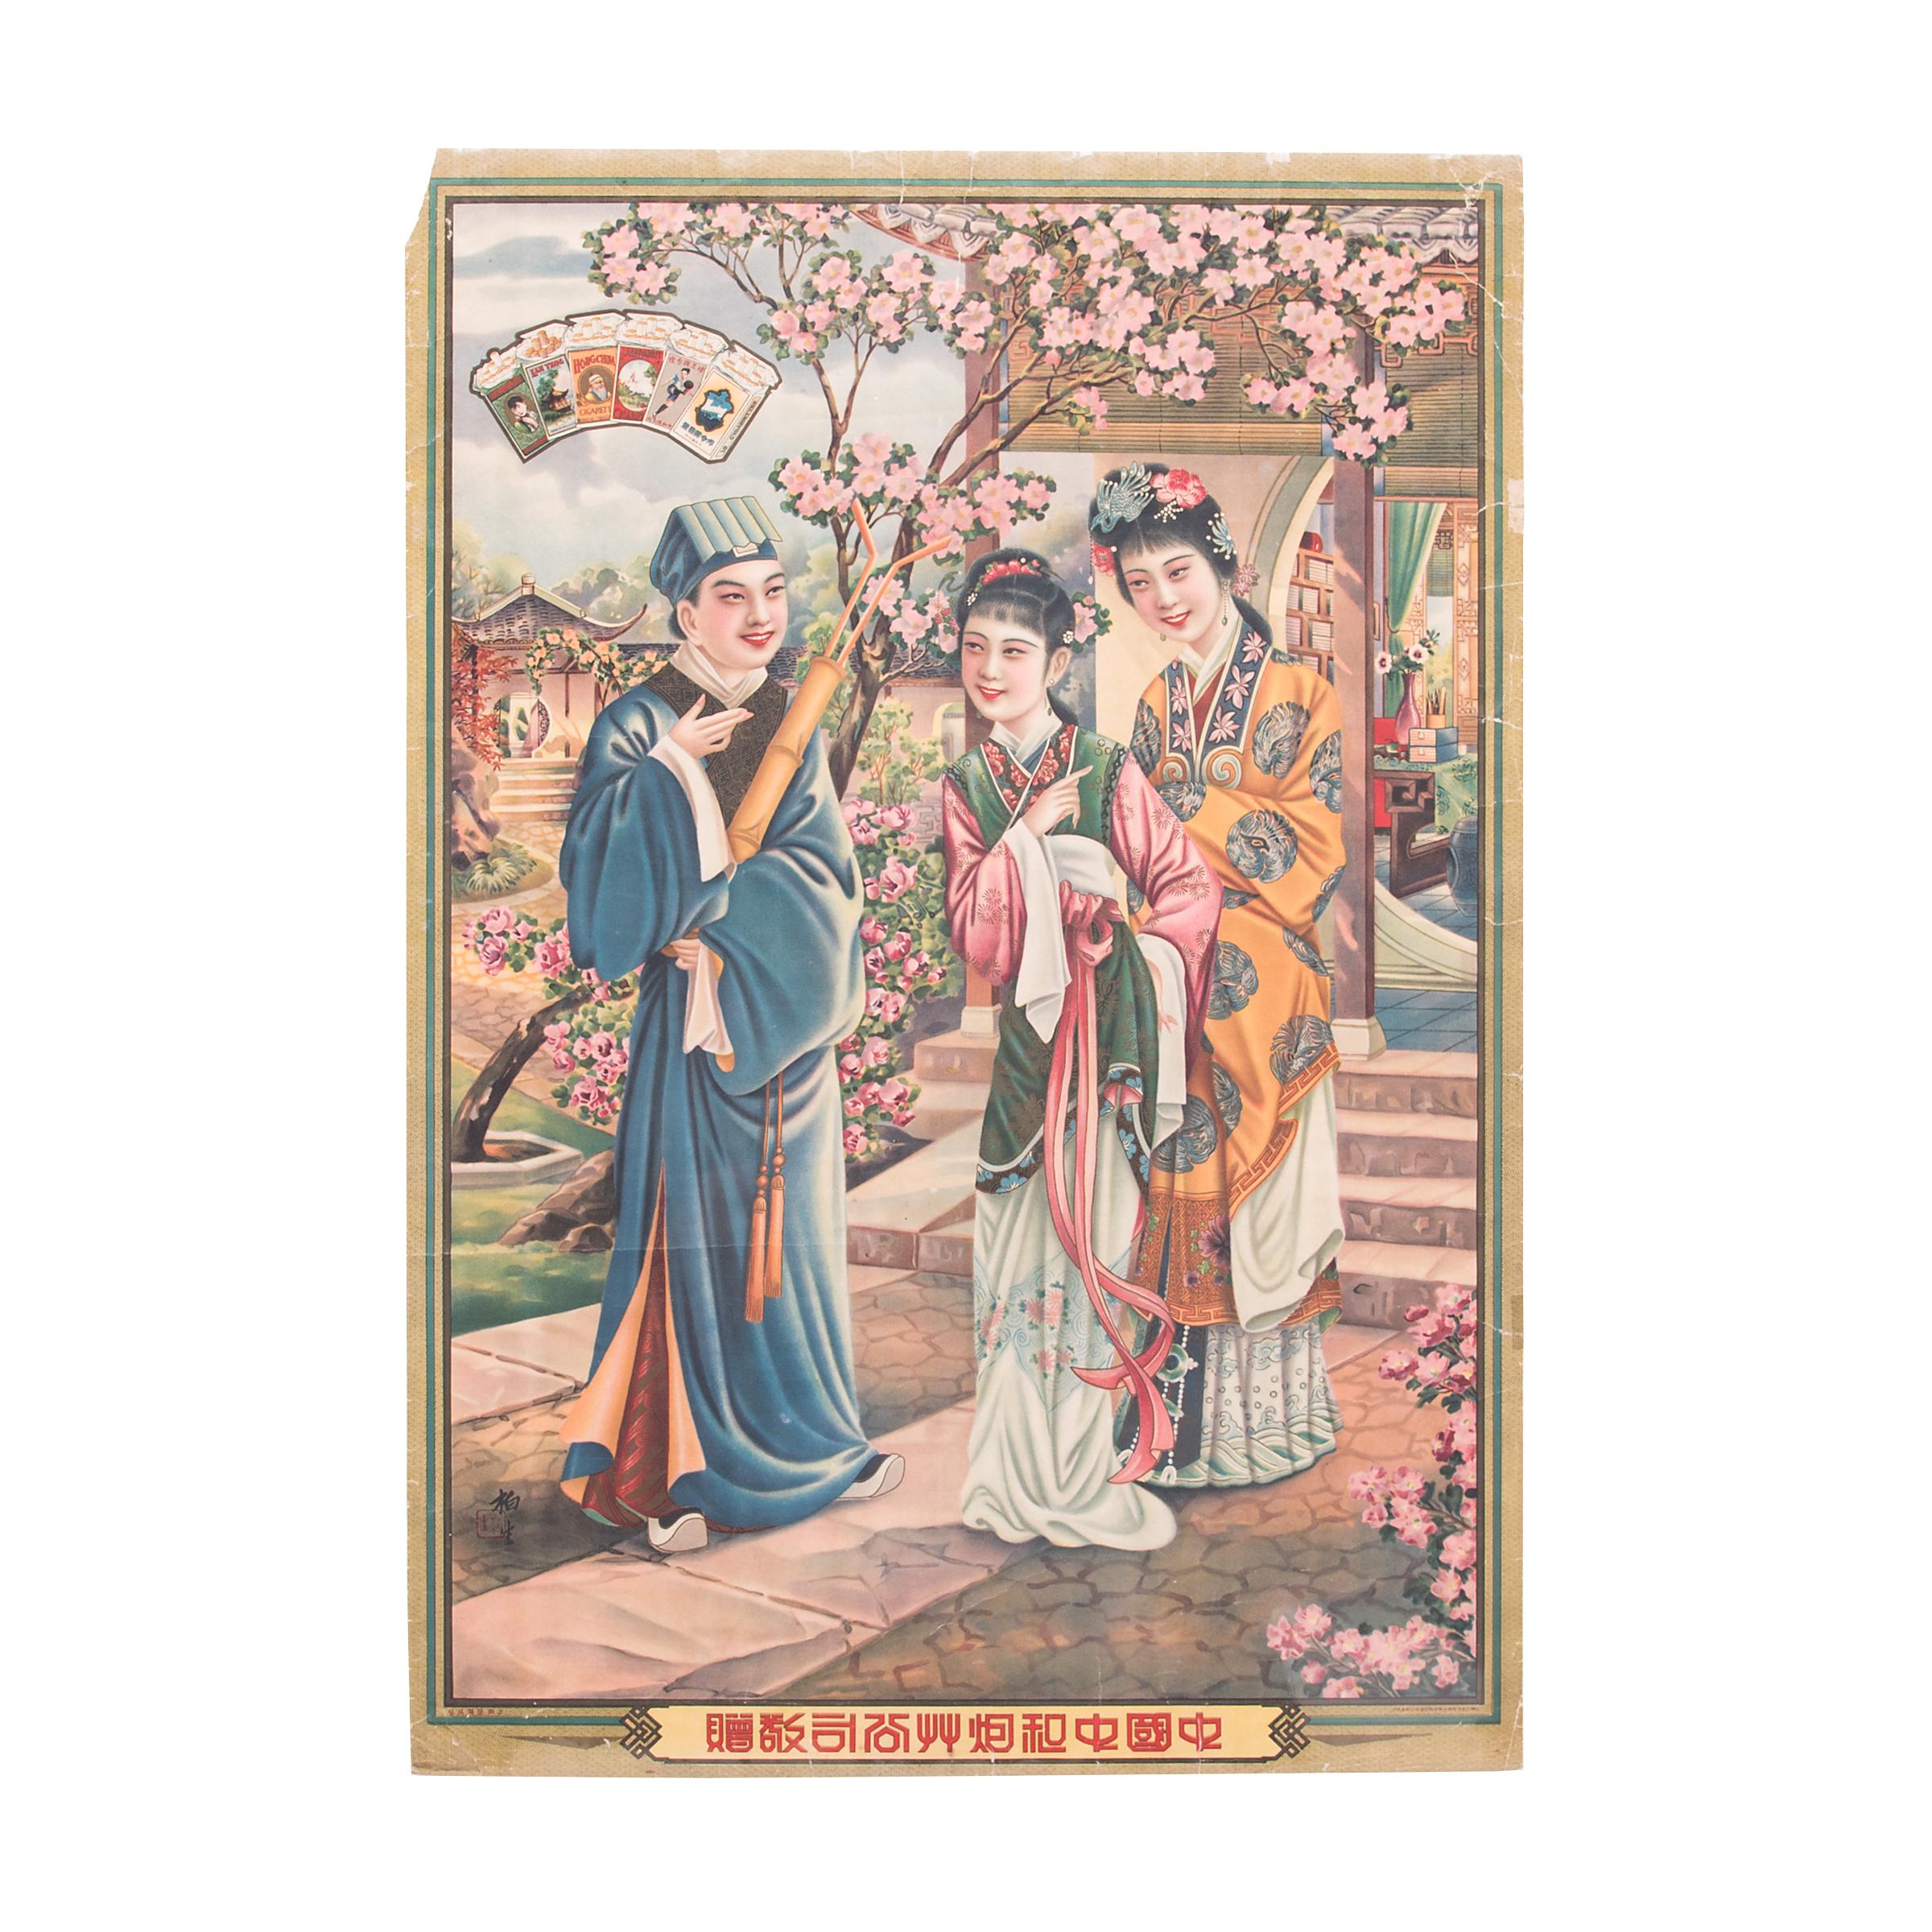 Chinesisches Werbeplakat für Zigaretten, Vintage, um 1930